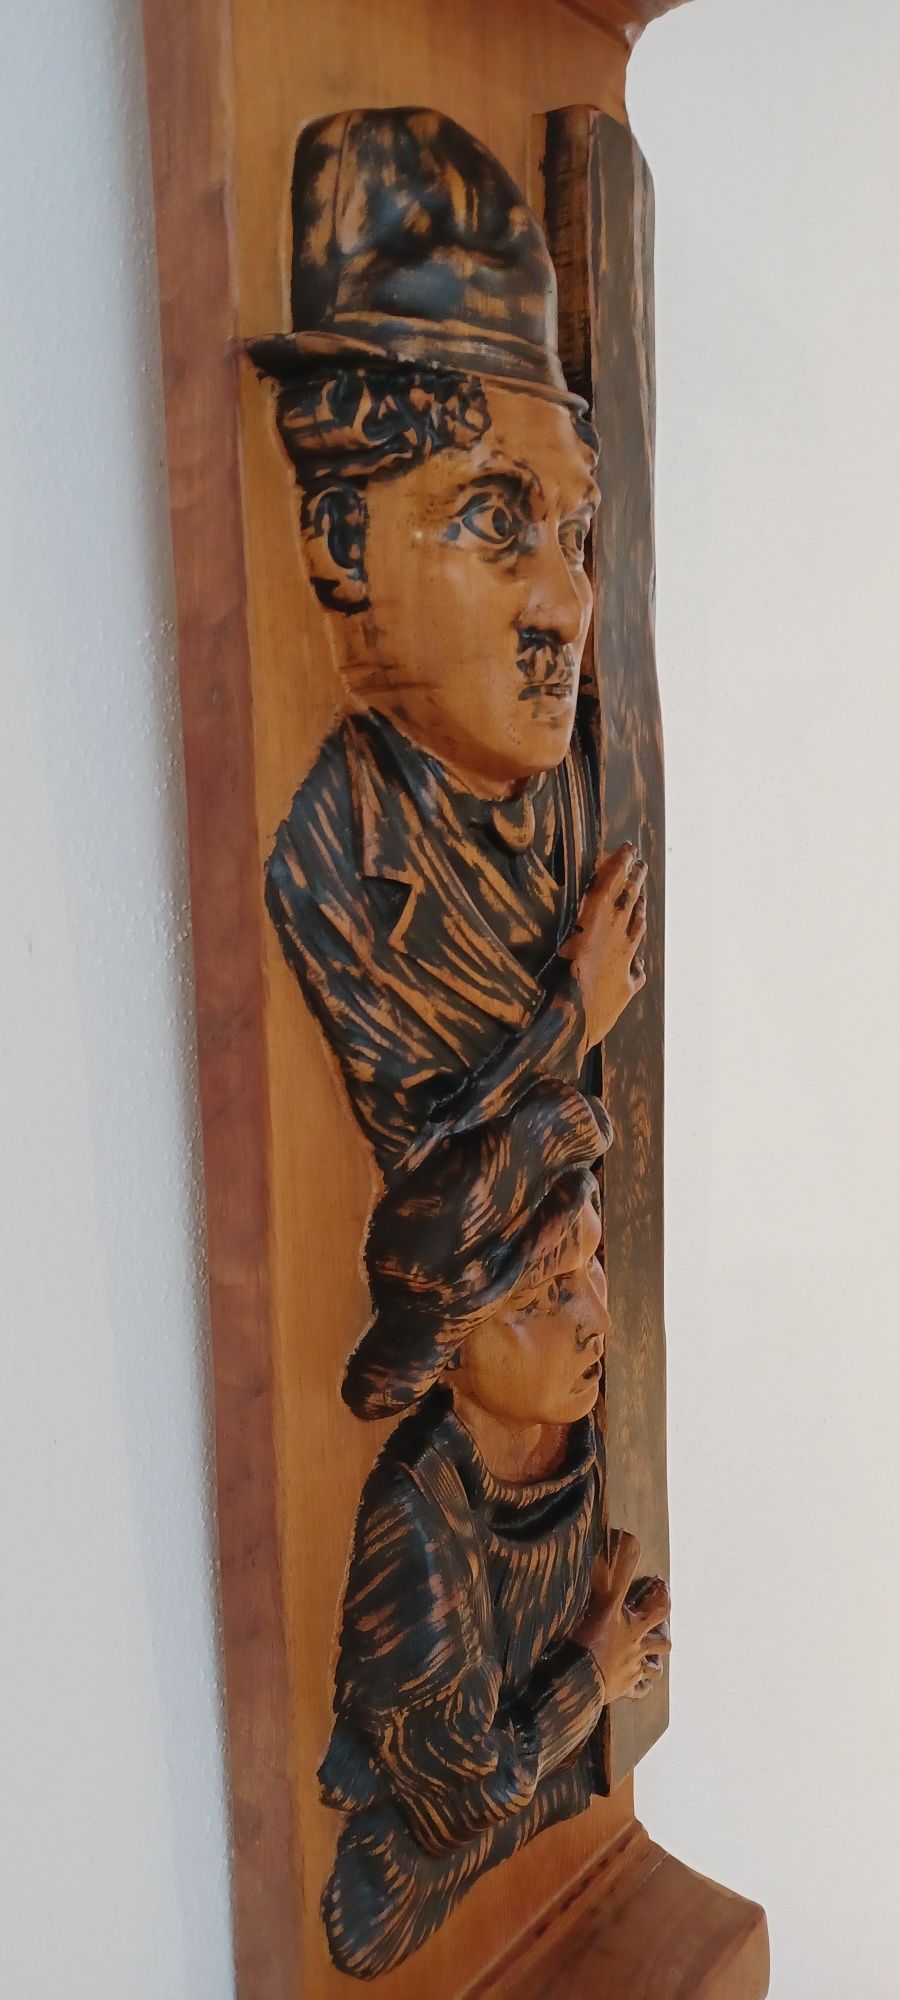 Charlie Chaplin, esculpido directamente em madeira exótica de Kambala